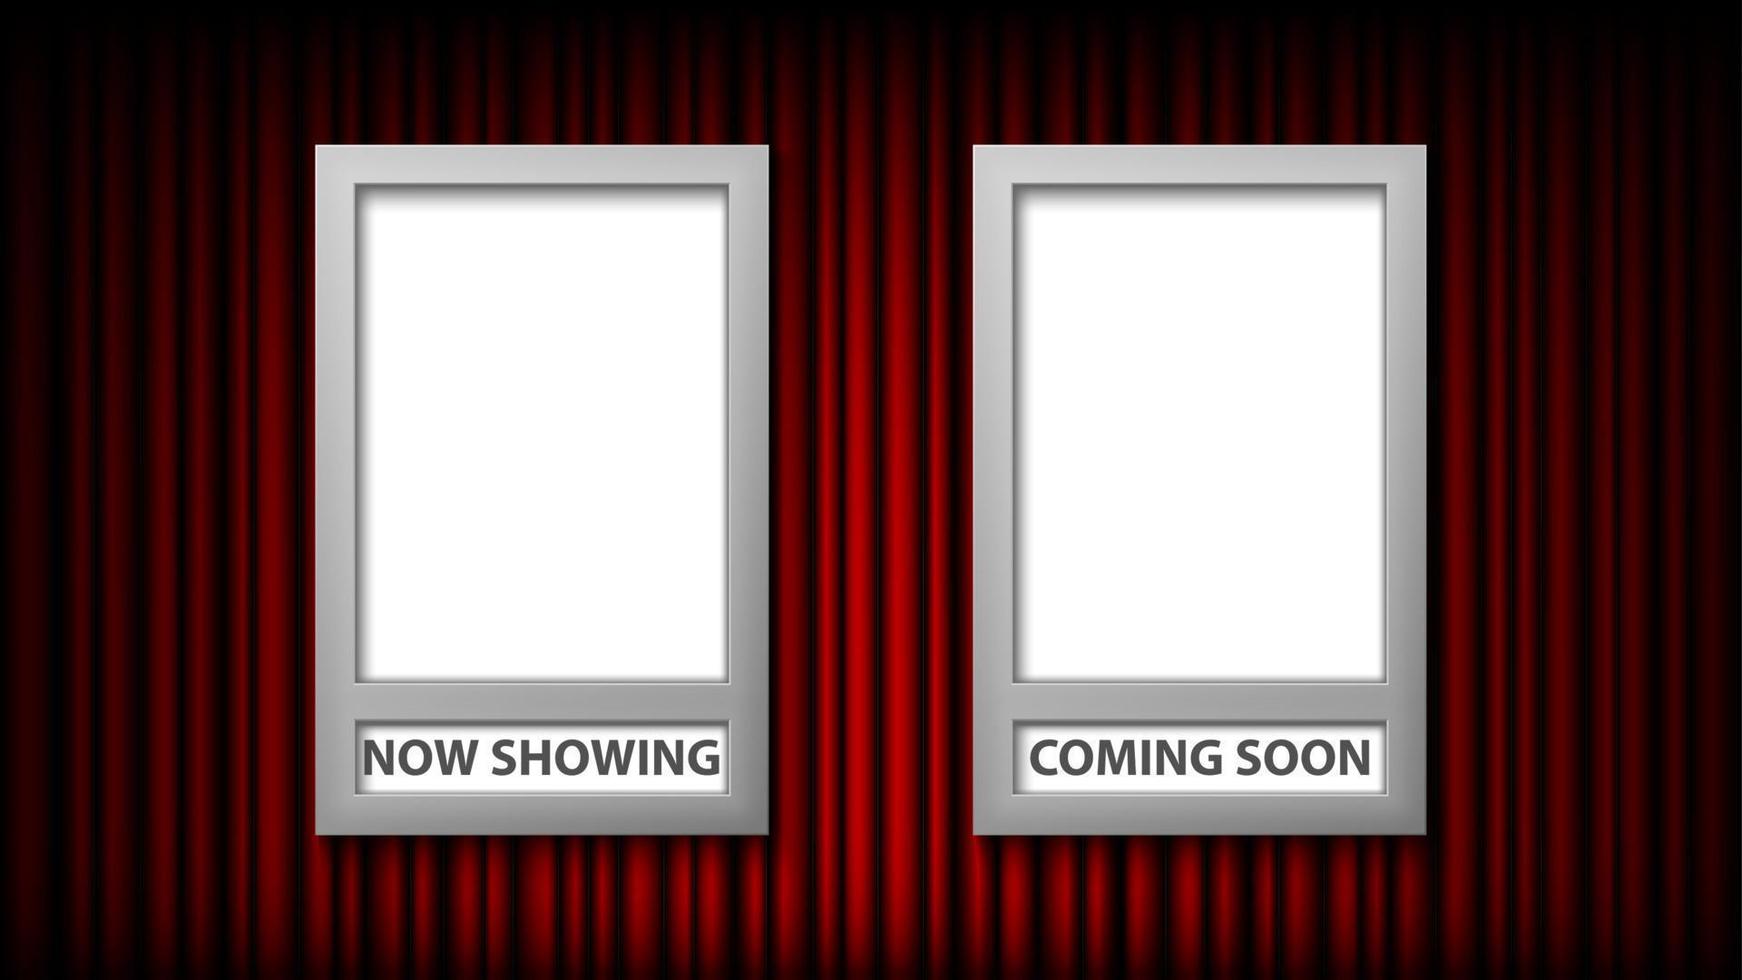 framesjabloon voor filmposters met nu te zien en binnenkort beschikbaar, vectorillustratie vector